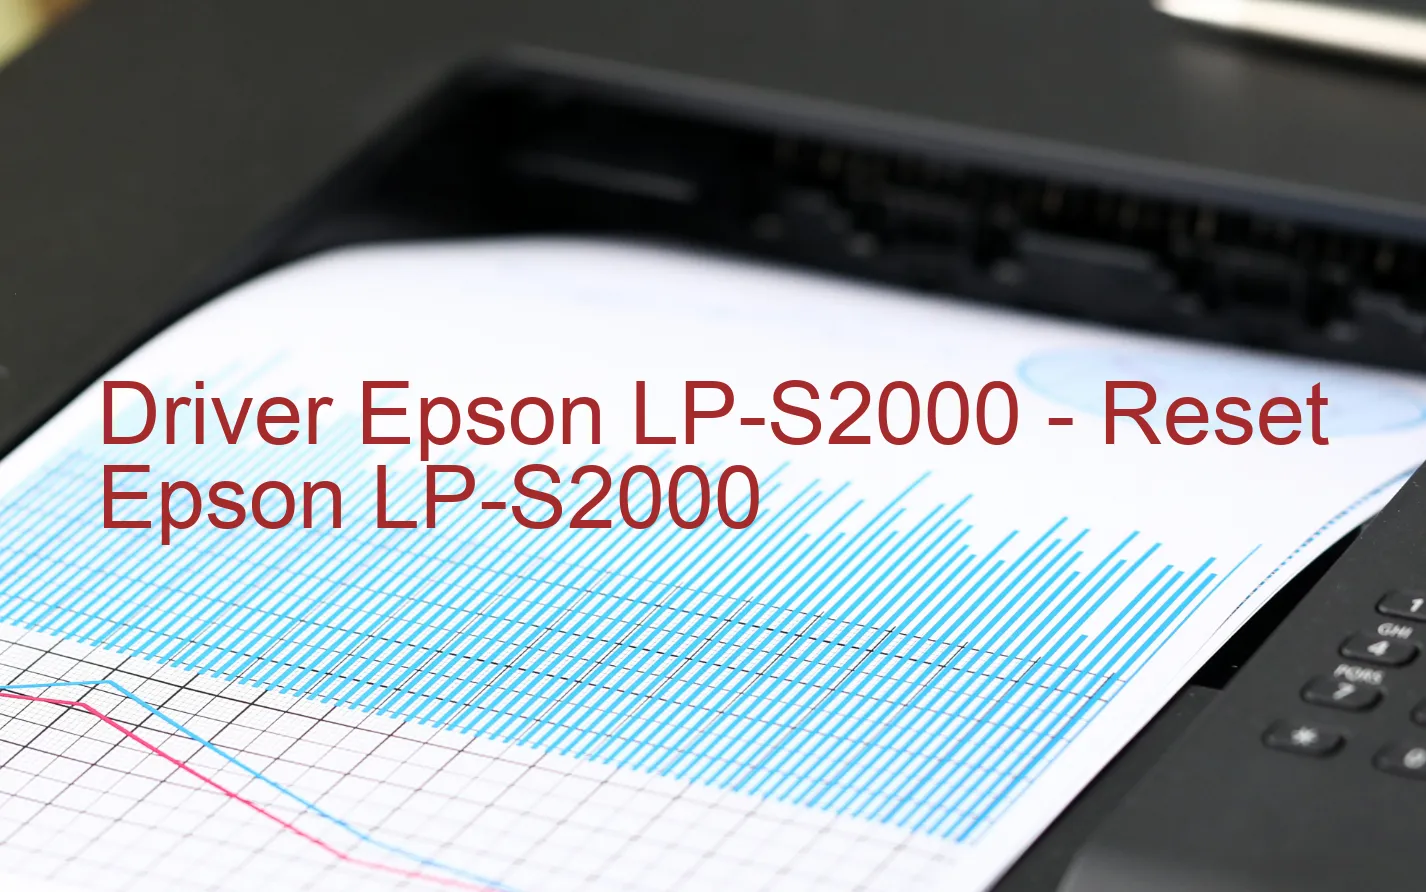 Epson LP-S2000のドライバー、Epson LP-S2000のリセットソフトウェア